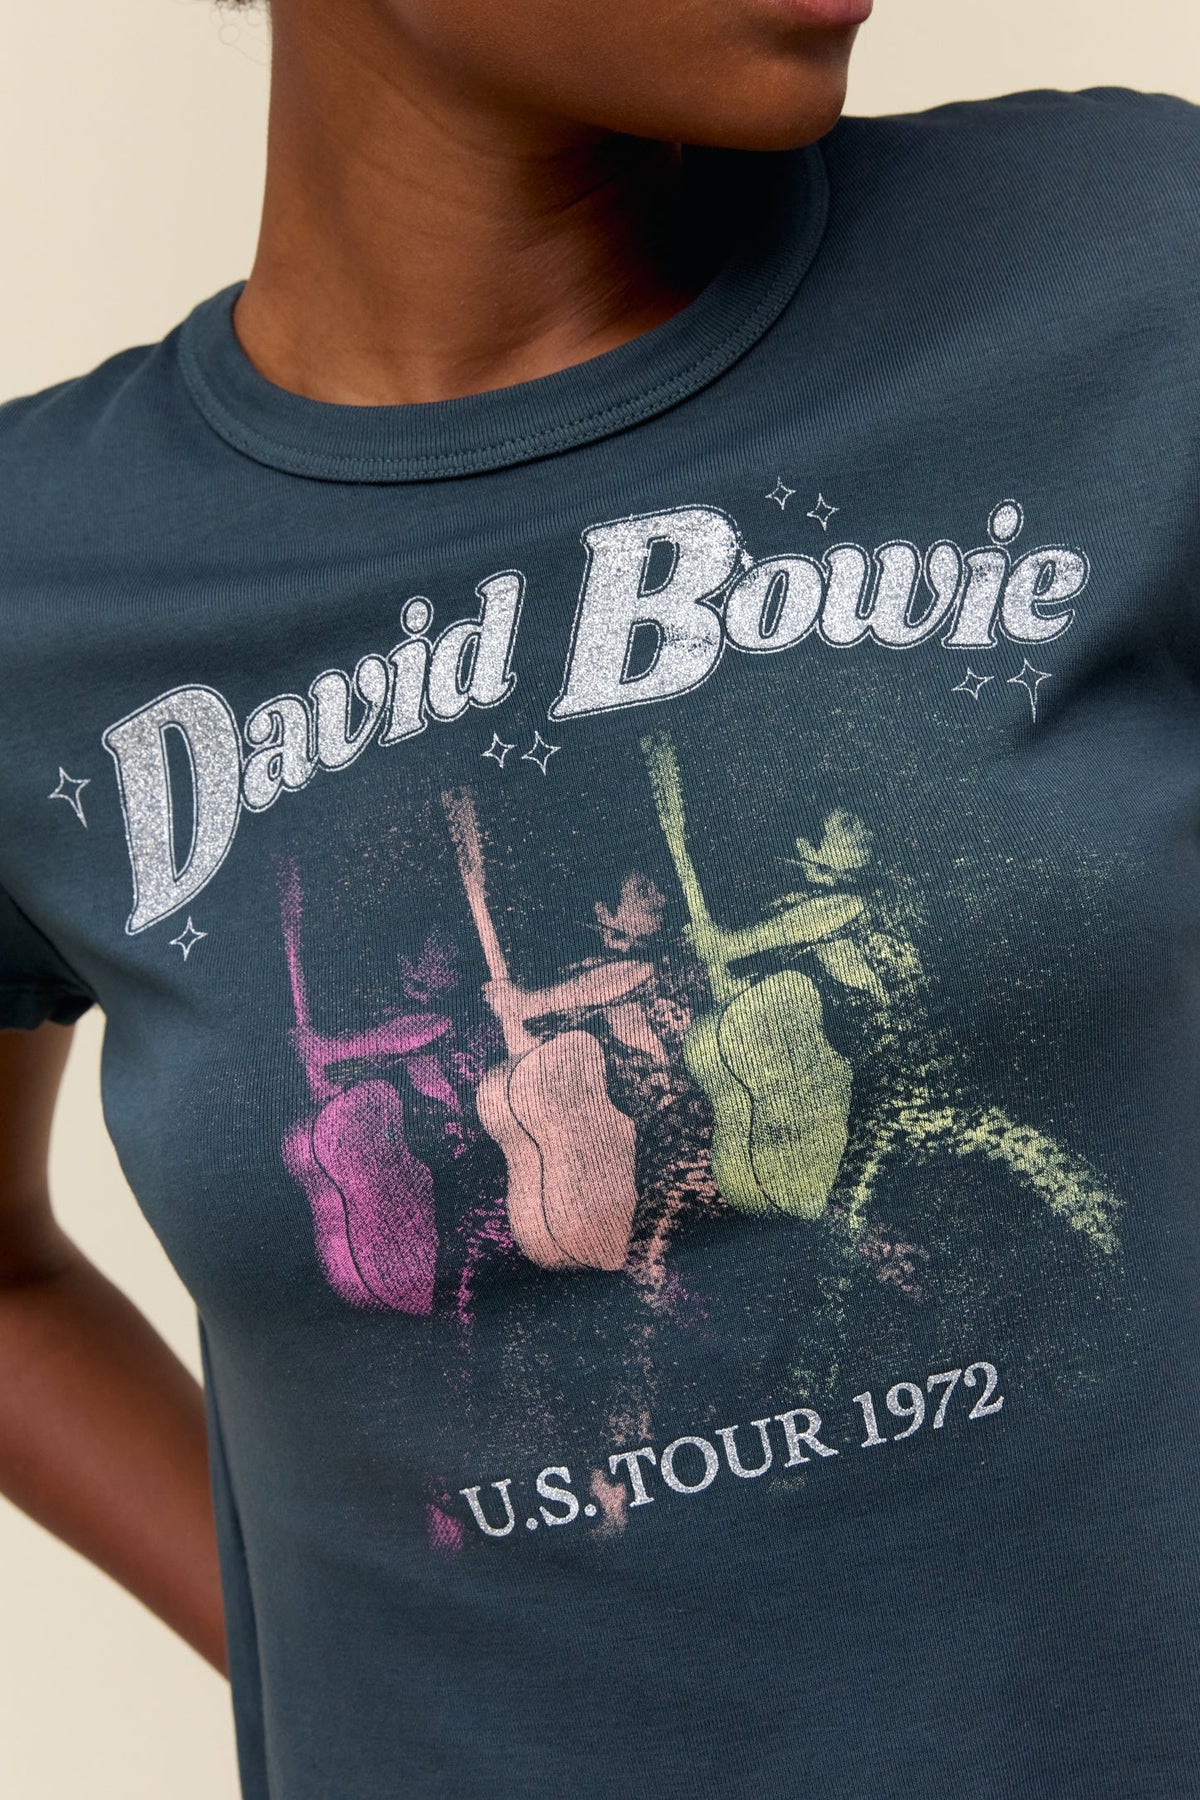 David Bowie Ziggy Stardust US Tour T Shirt 1972 Shrunken Tee